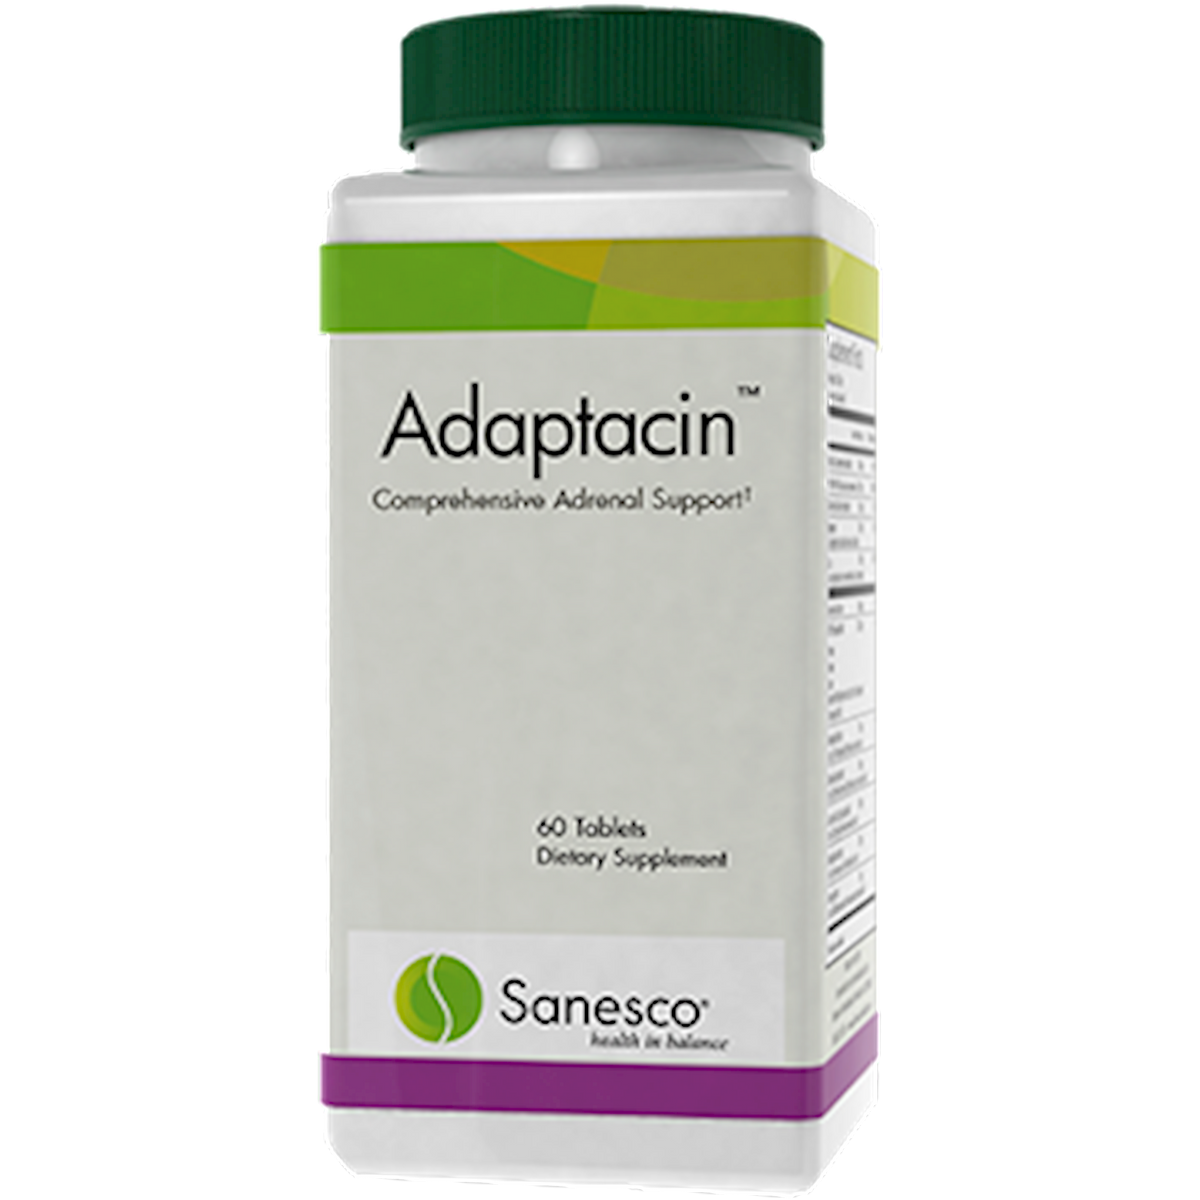 Adaptacin 60 tablets